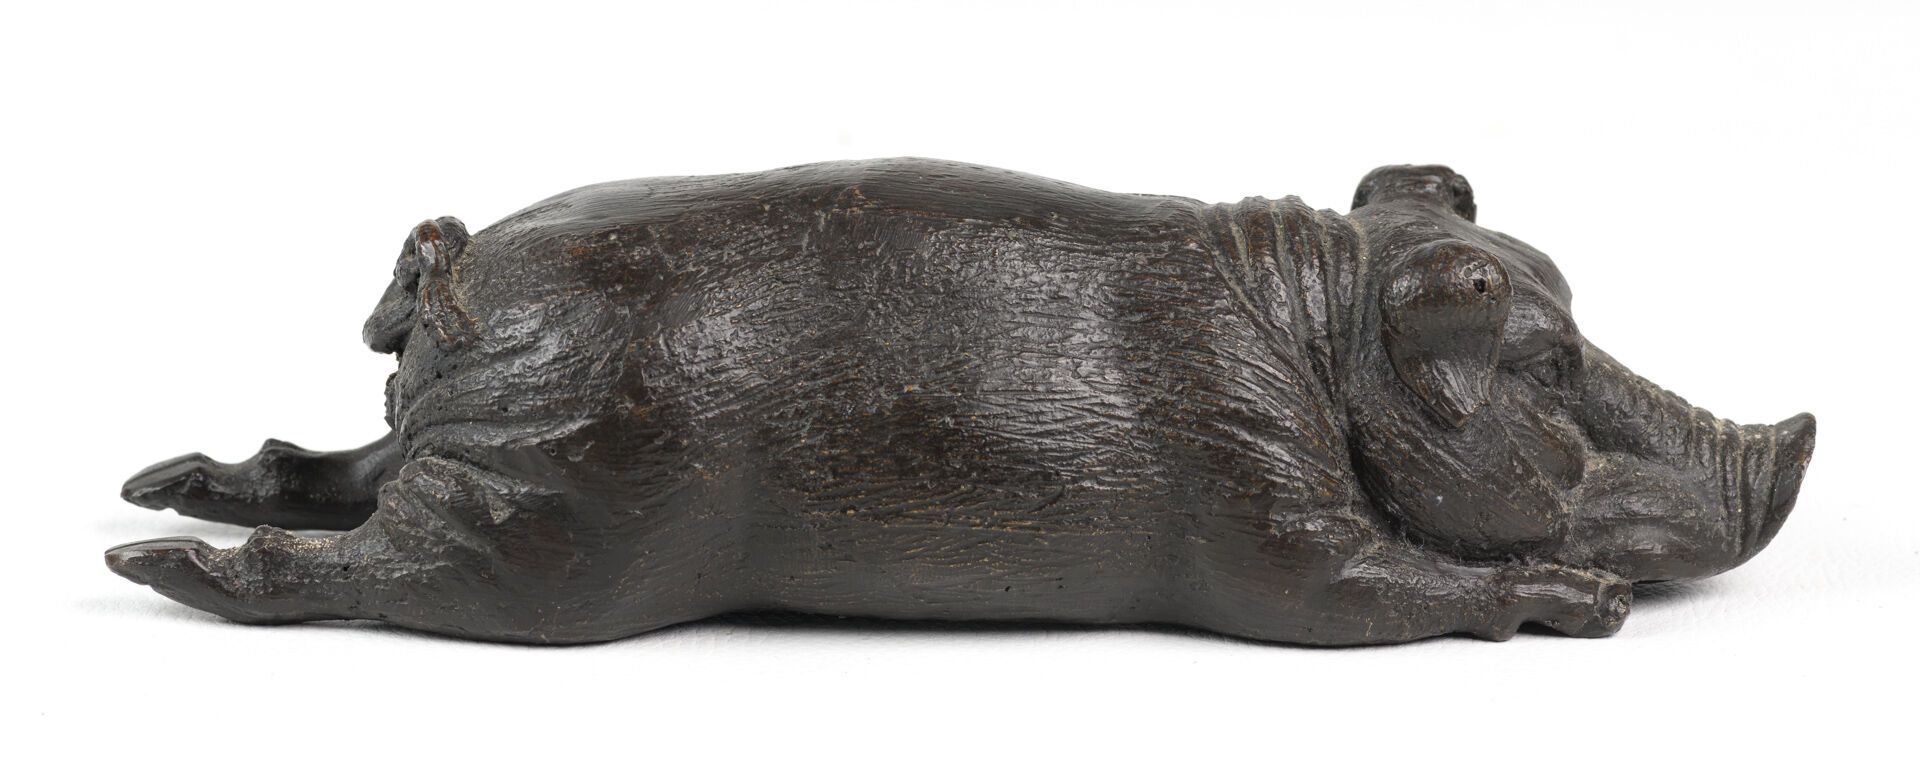 Null "Wildschwein" Skulptur aus patinierter Erde, H: 20cm